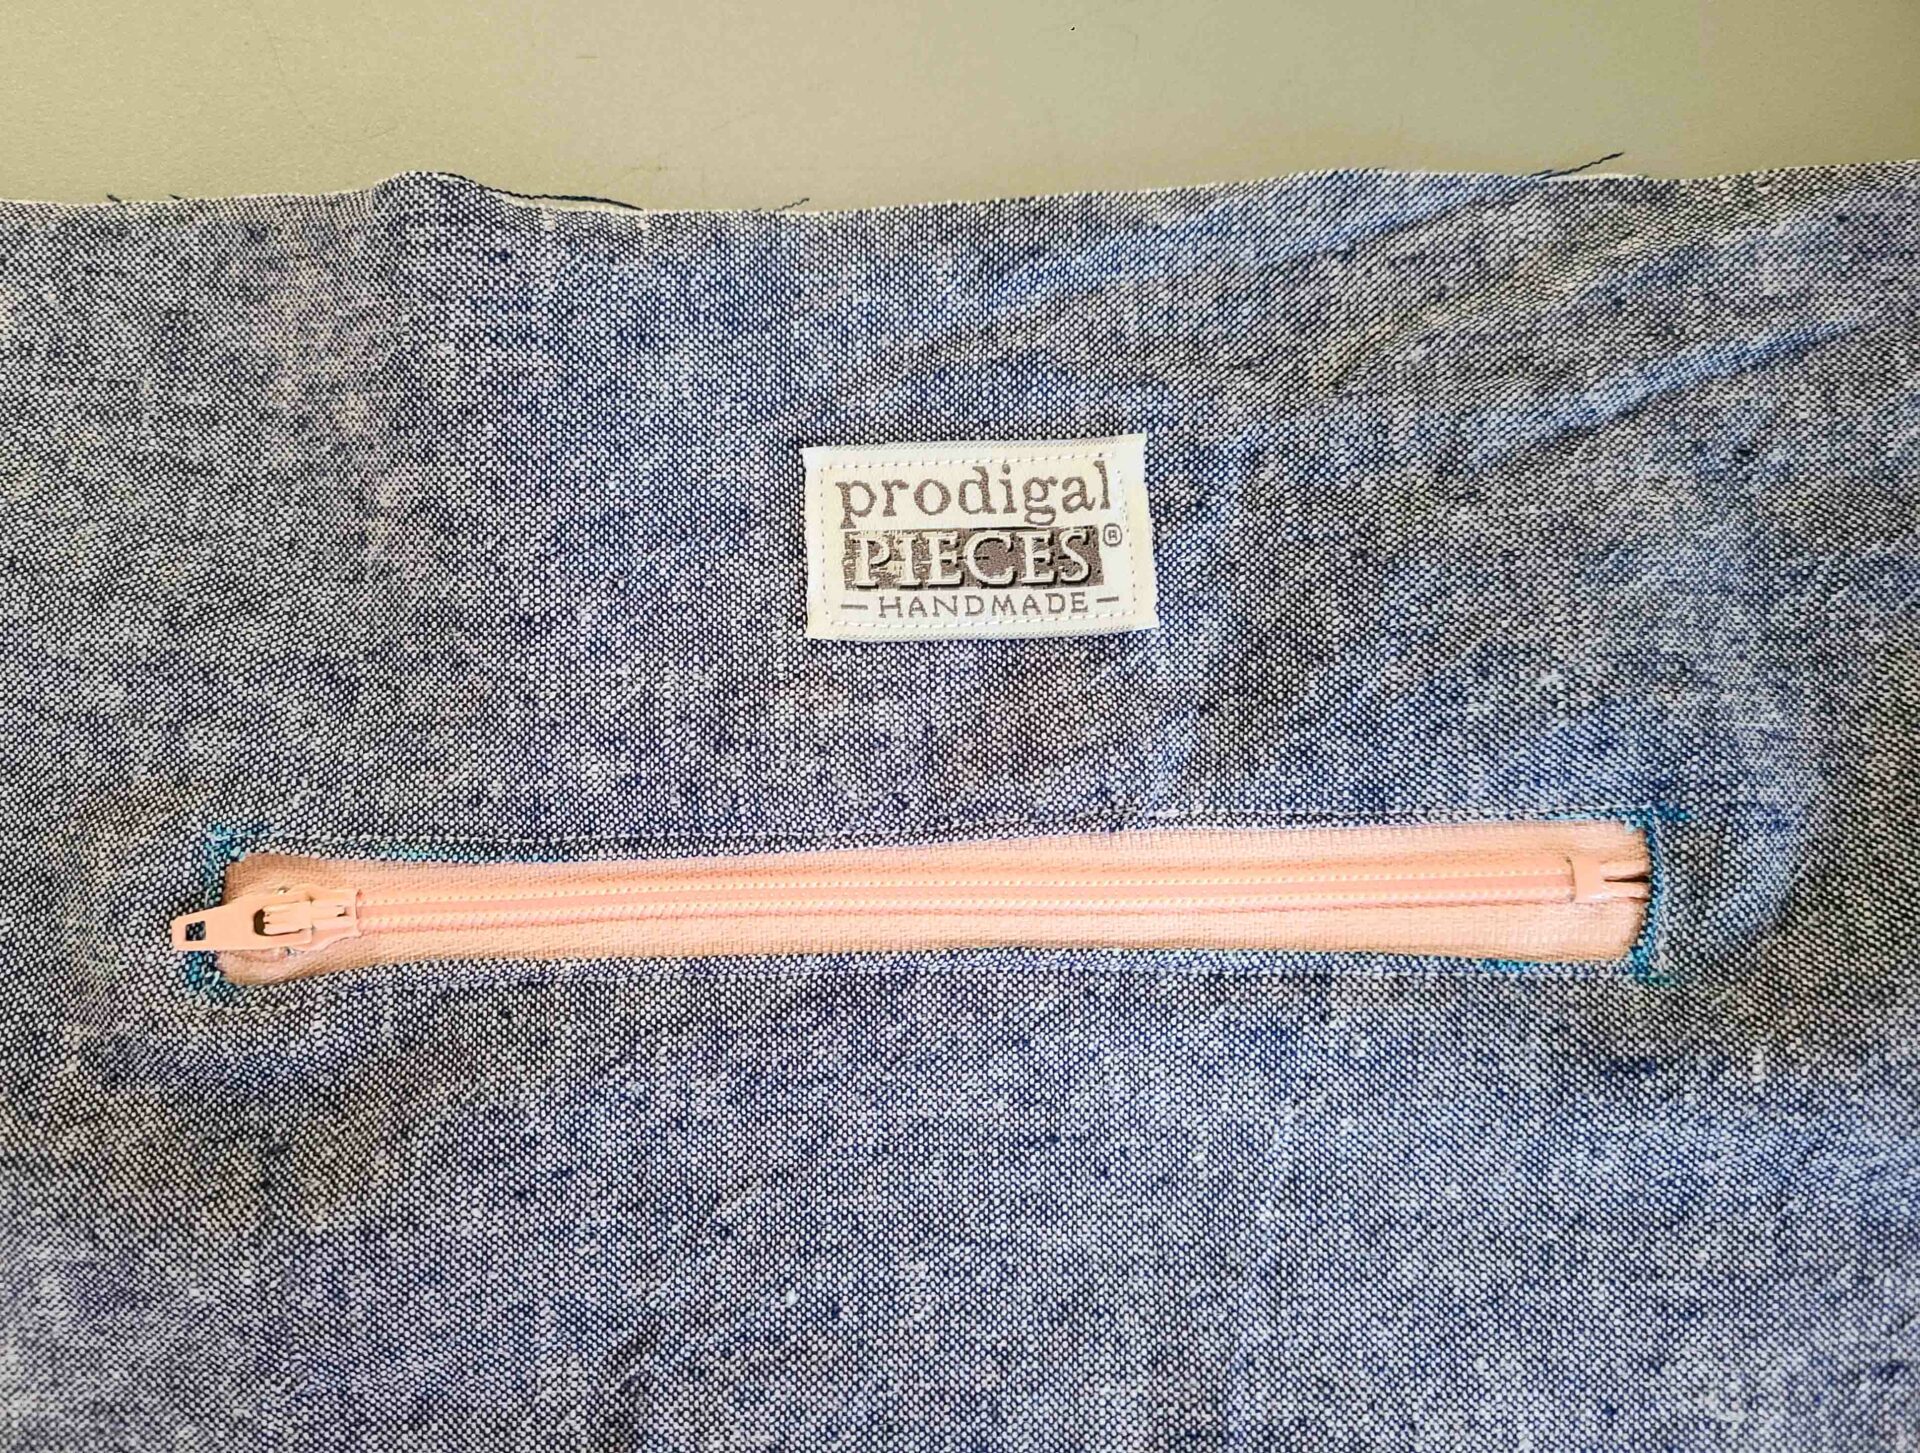 Sewn in Zipper to DIY Boho Bag | prodigalpieces.com #prodigalpieces